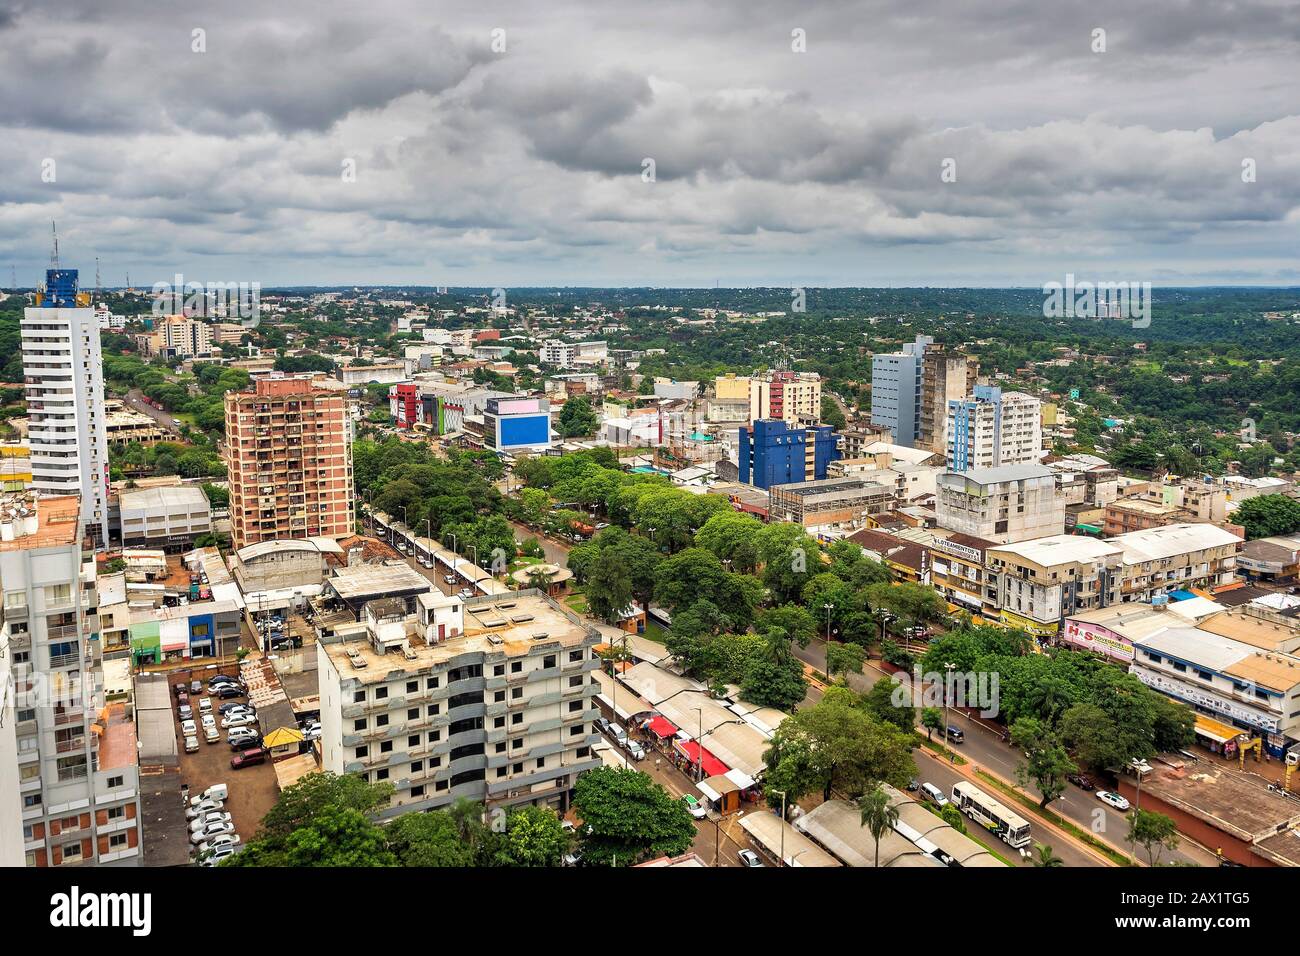 Vista aérea de Ciudad del este, la segunda ciudad más grande de Paraguay, en la frontera con Foz do Iguacu, Brasil. Foto de stock